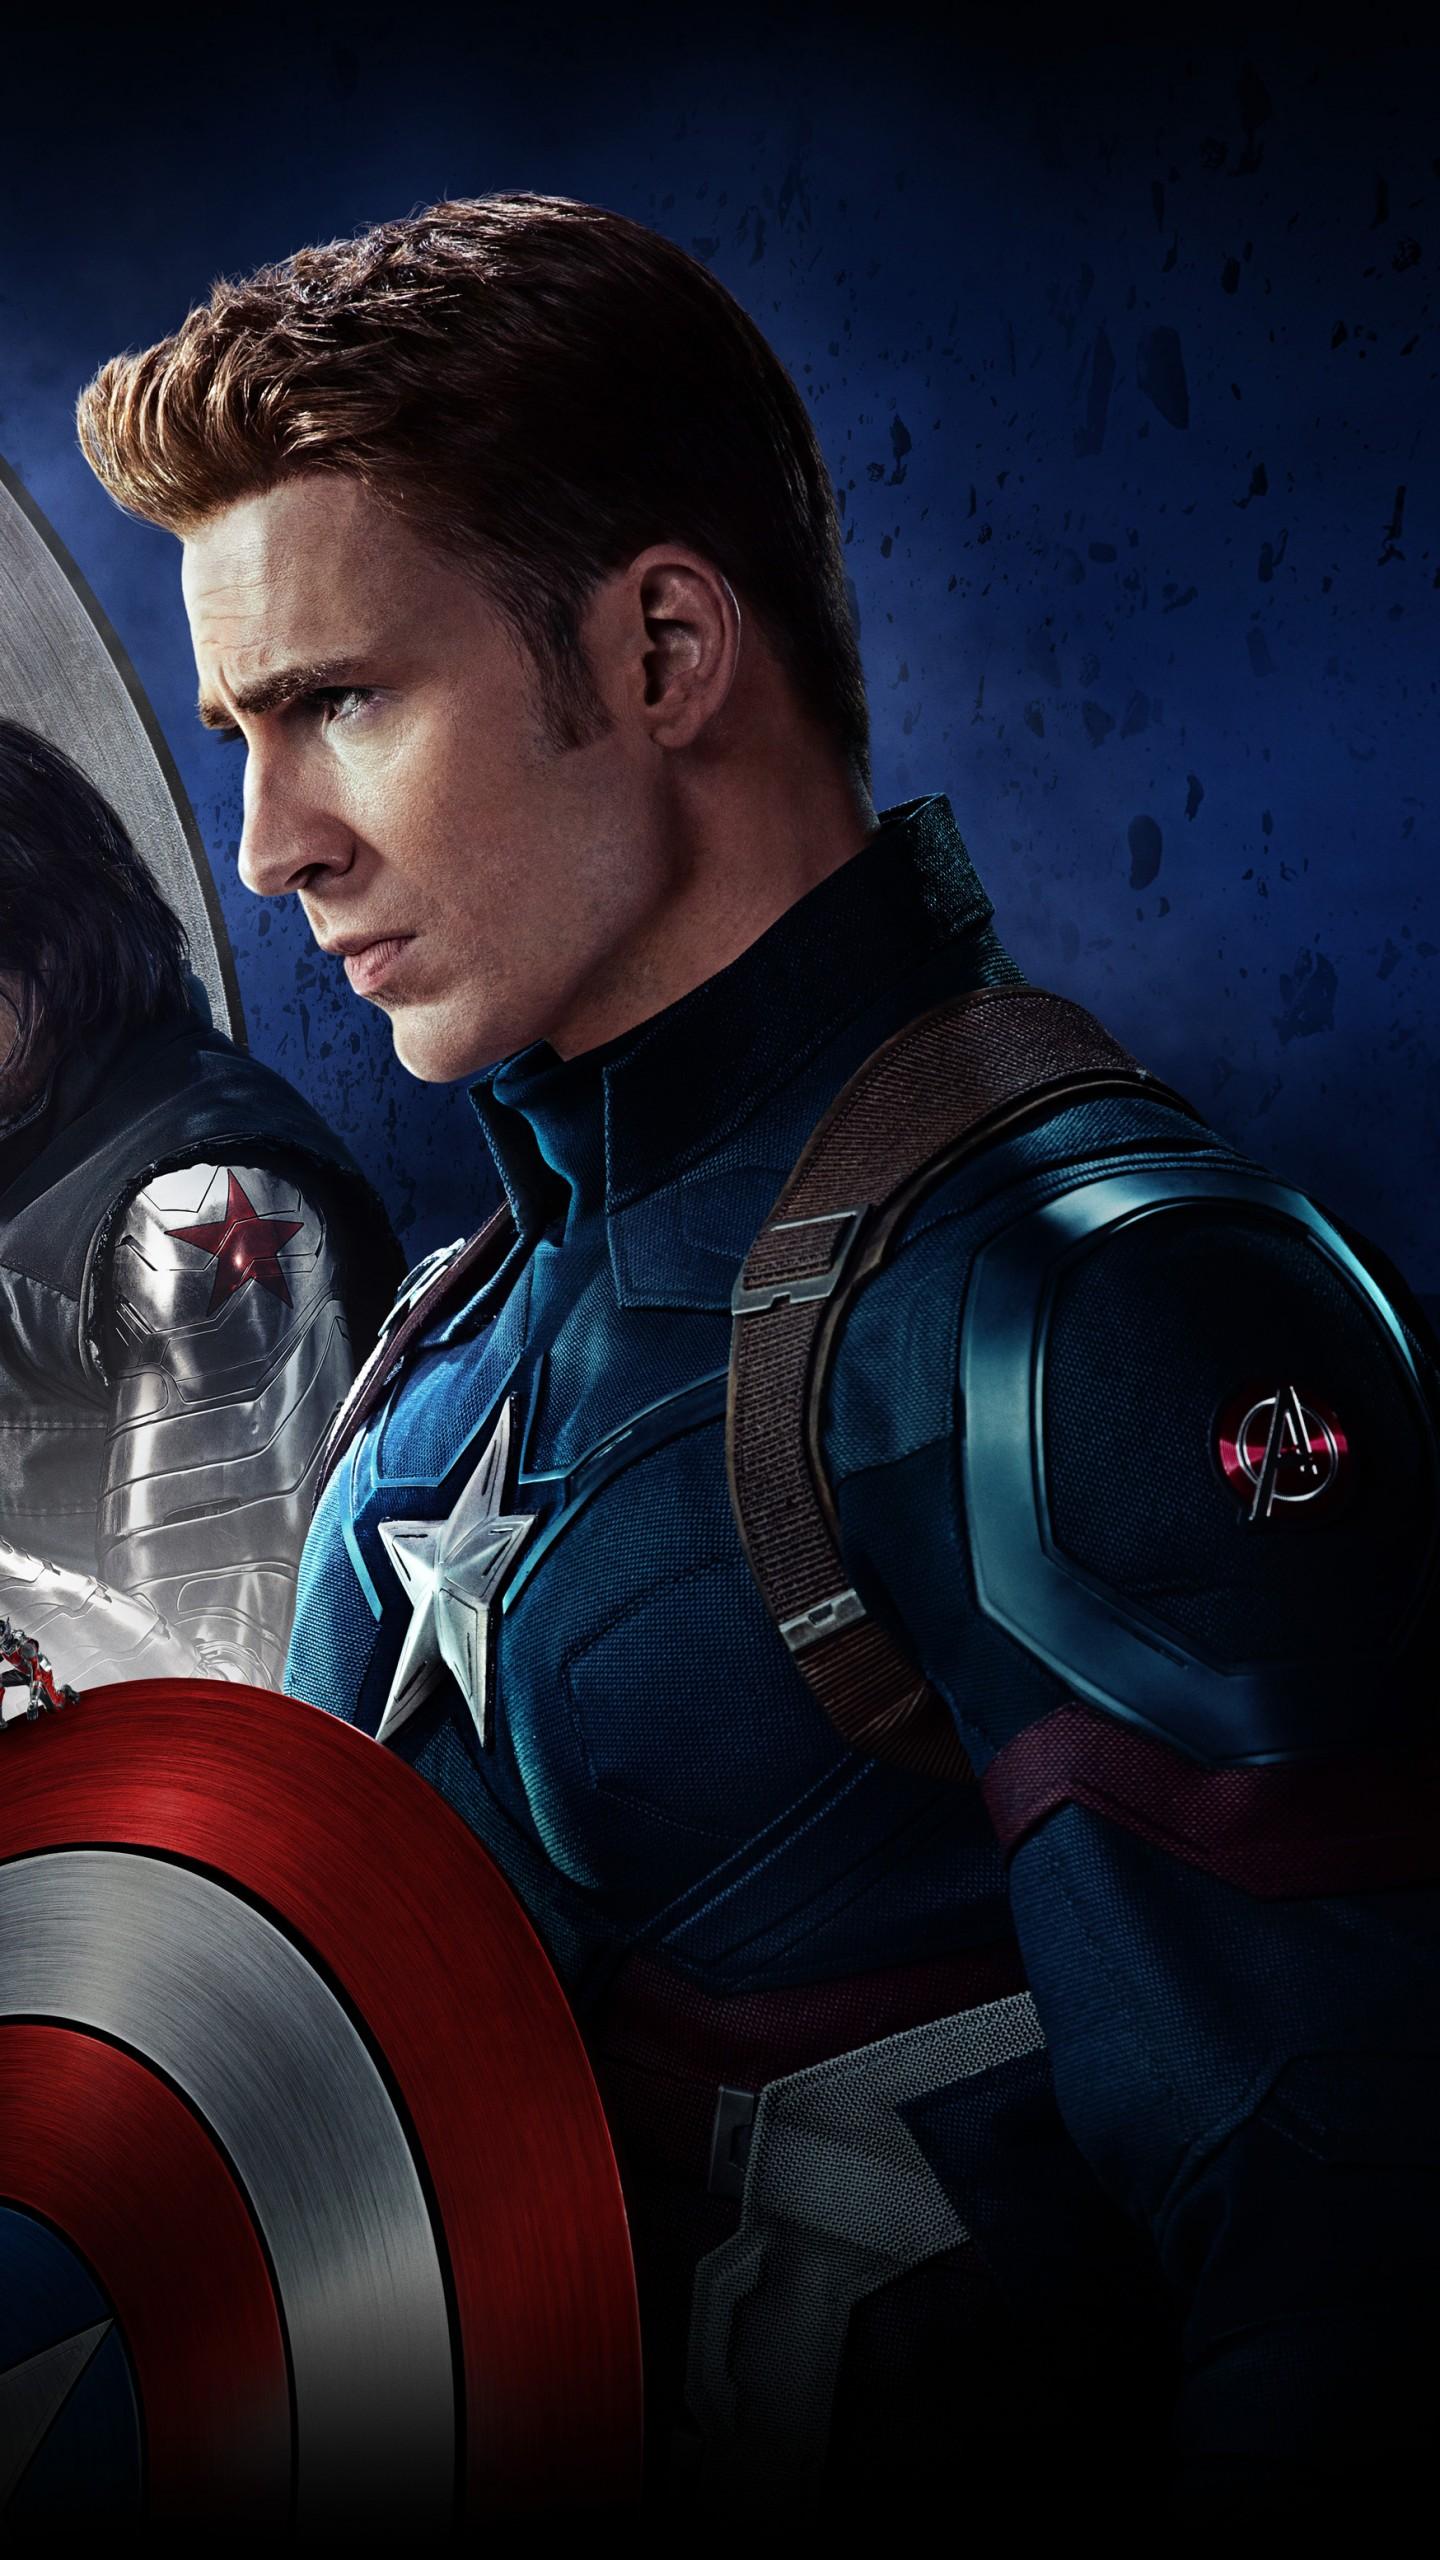 Wallpaper Captain America, Civil War, 2016 Movies, 4K, 5K